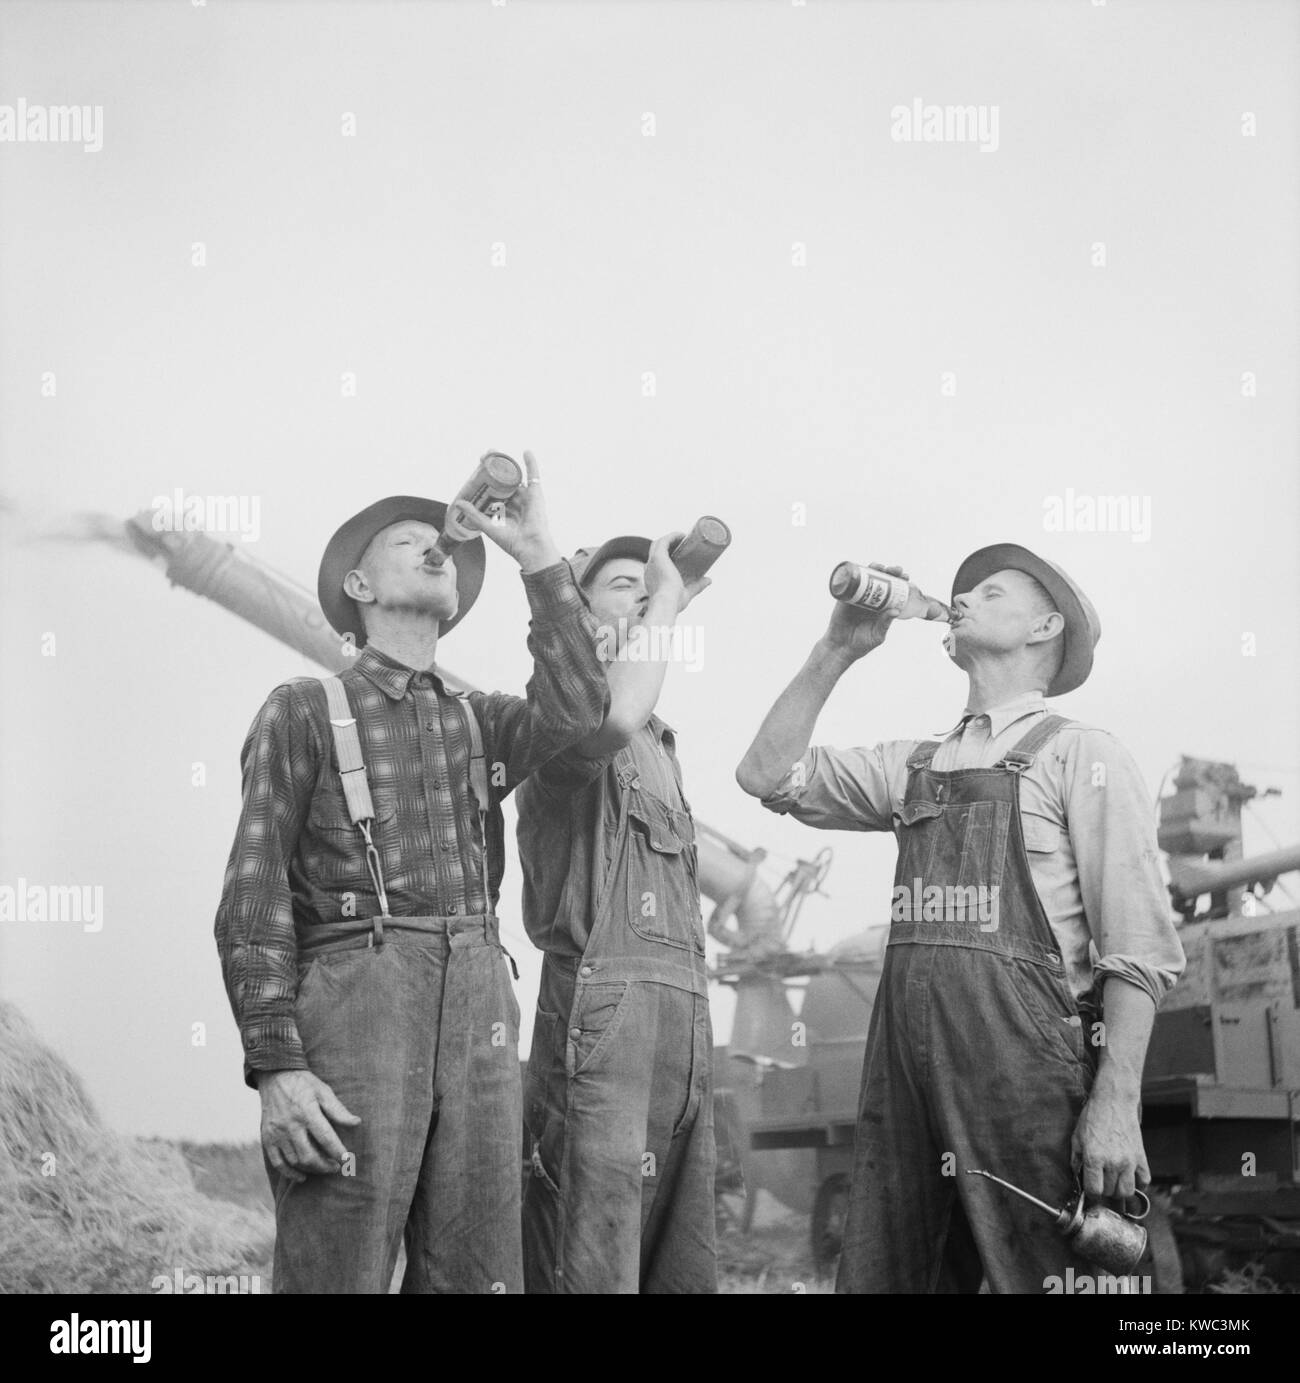 Gli agricoltori di bere birra durante la raccolta autunnale di Jackson, Michigan. Autunno 1941. In fondo è una condizione potenzialmente pericolosa macchina di raccolta, che richiede lavoratori avviso. (BSLOC 2015 14 141) Foto Stock